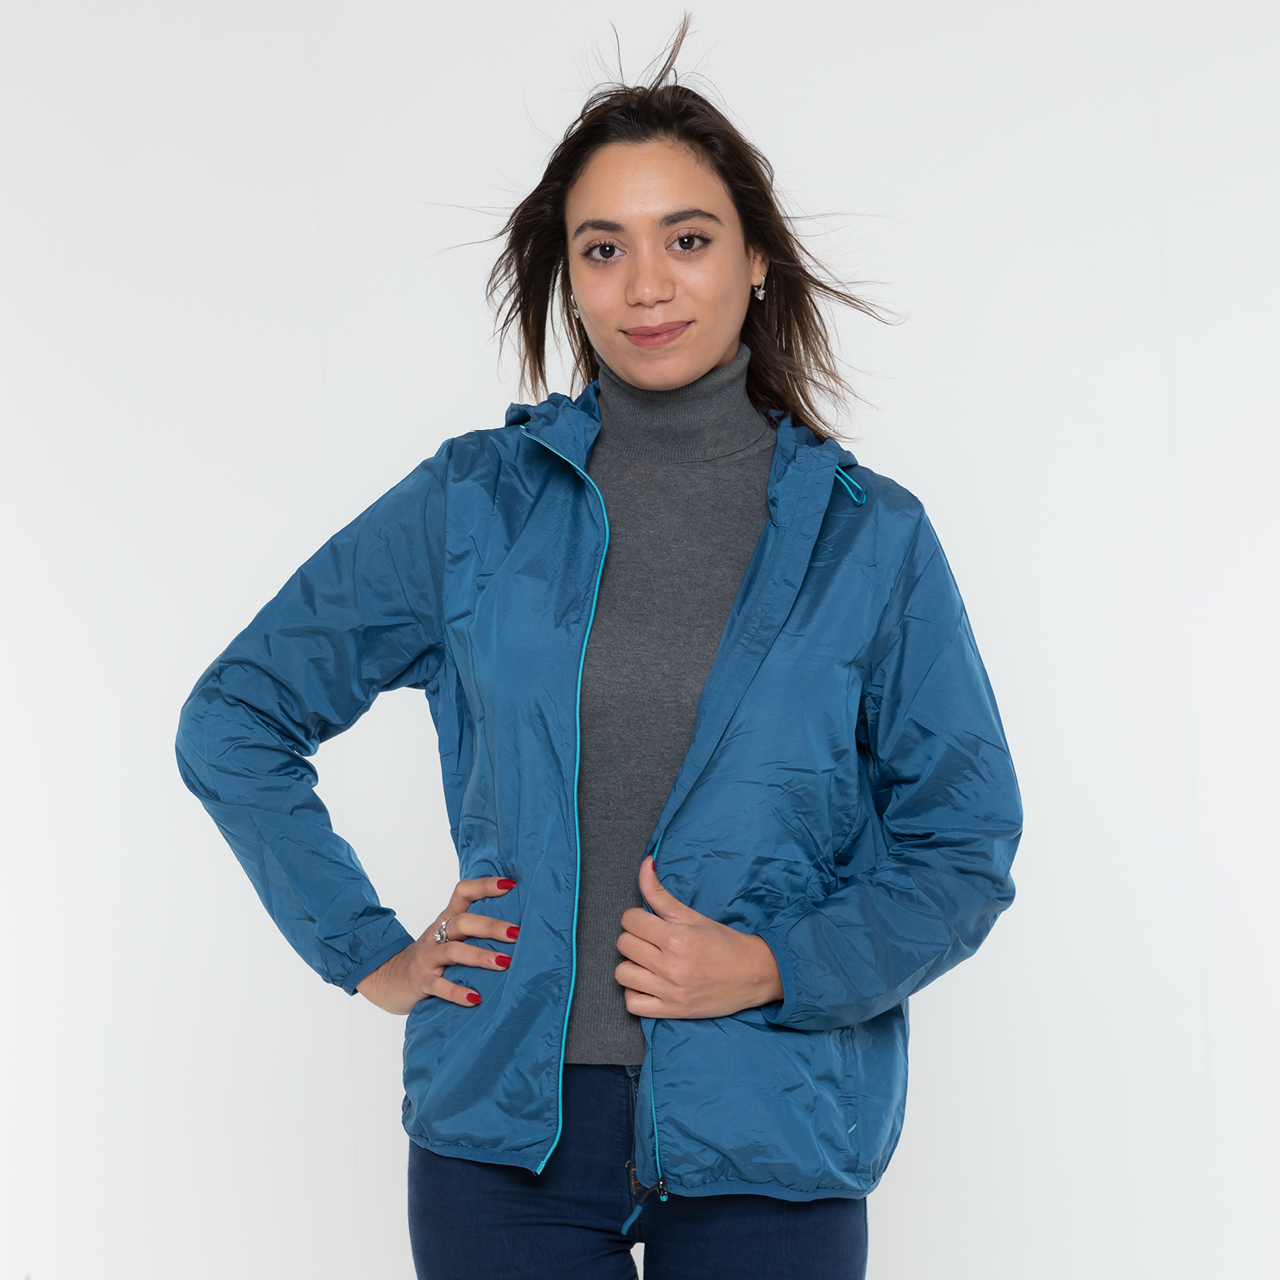 All season women jackets in blue L/XL